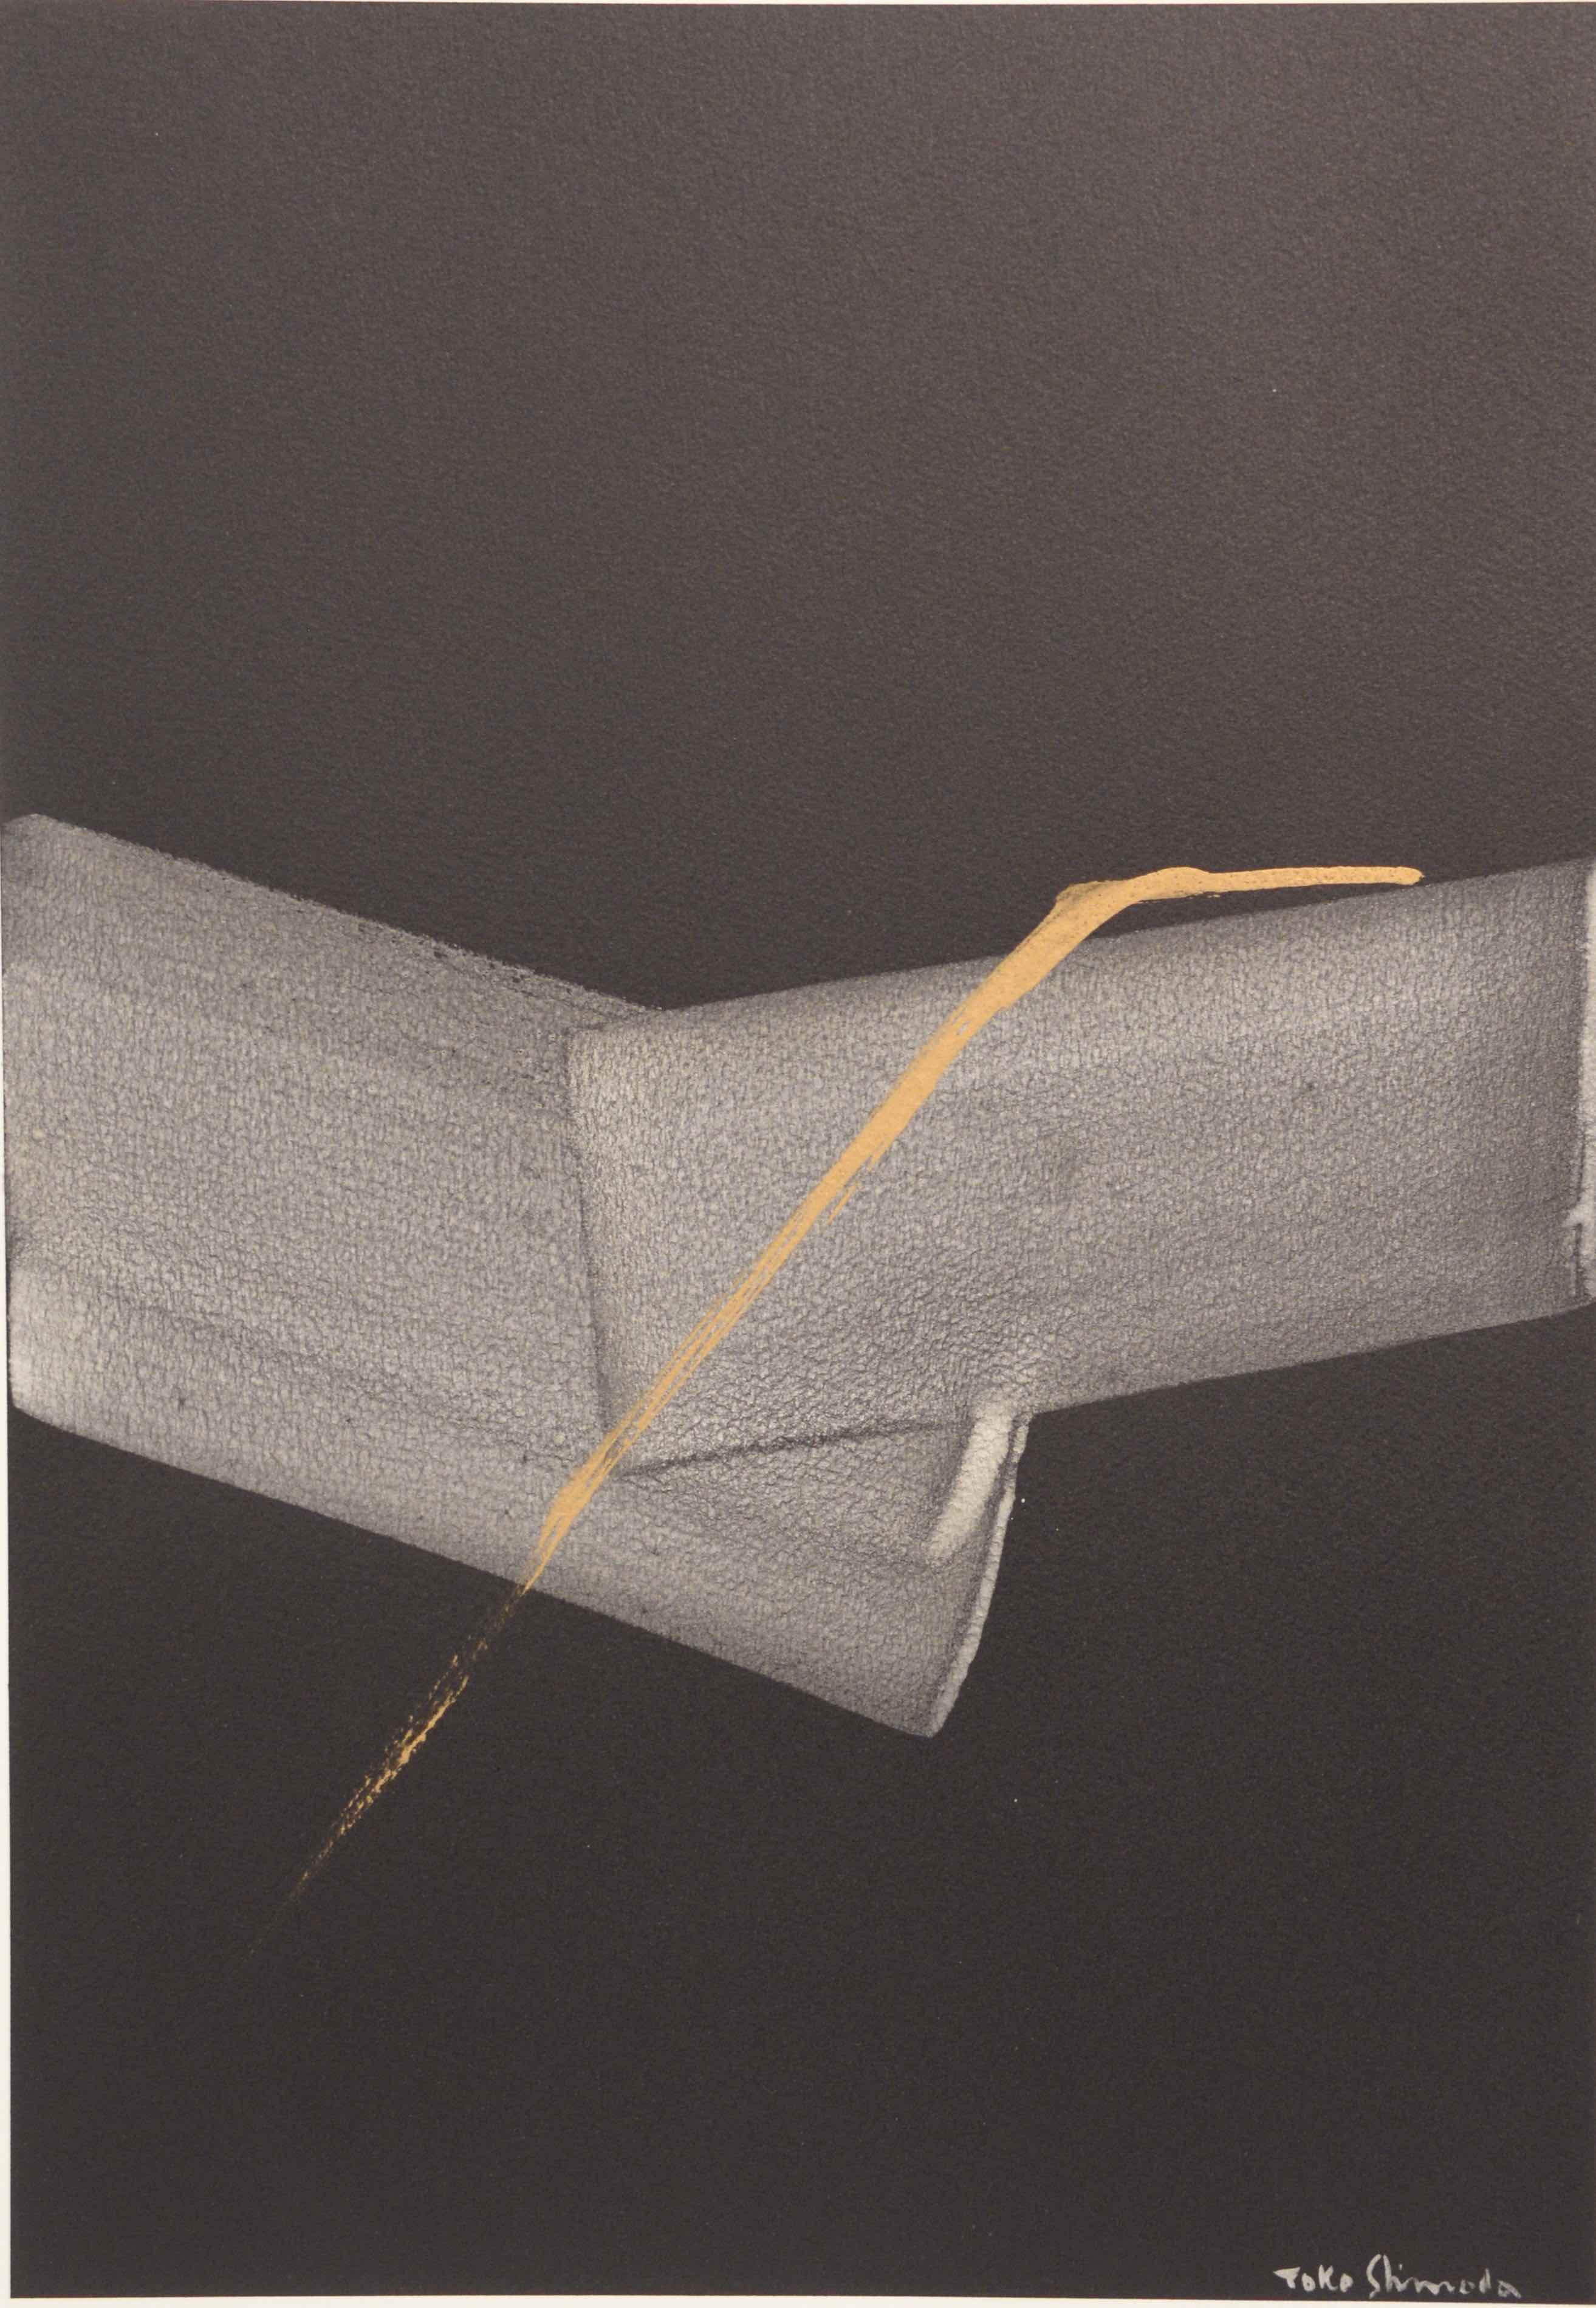 Toko Shinoda (b. 1913) mixed media on paper, estimated at $3,000-6,000.